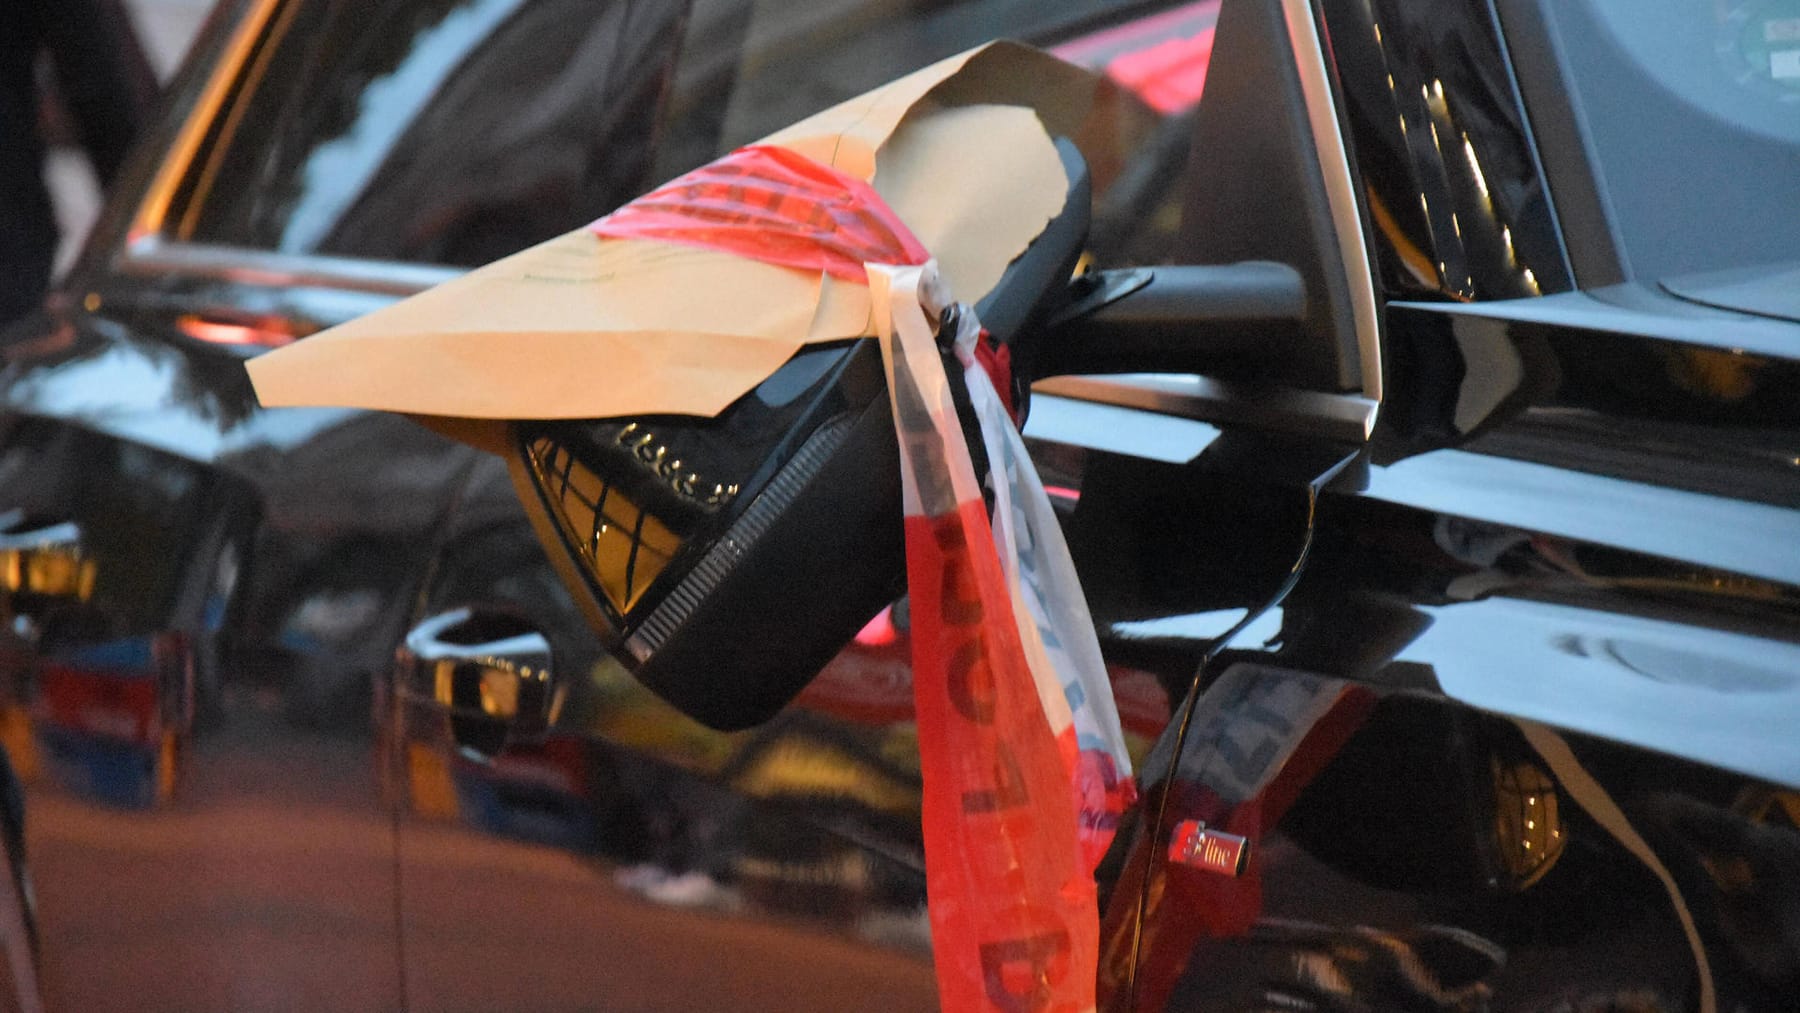 Schäden am Auto: Spiegel ab, Antenne verbogen – Wer zahlt für Vandalismus?